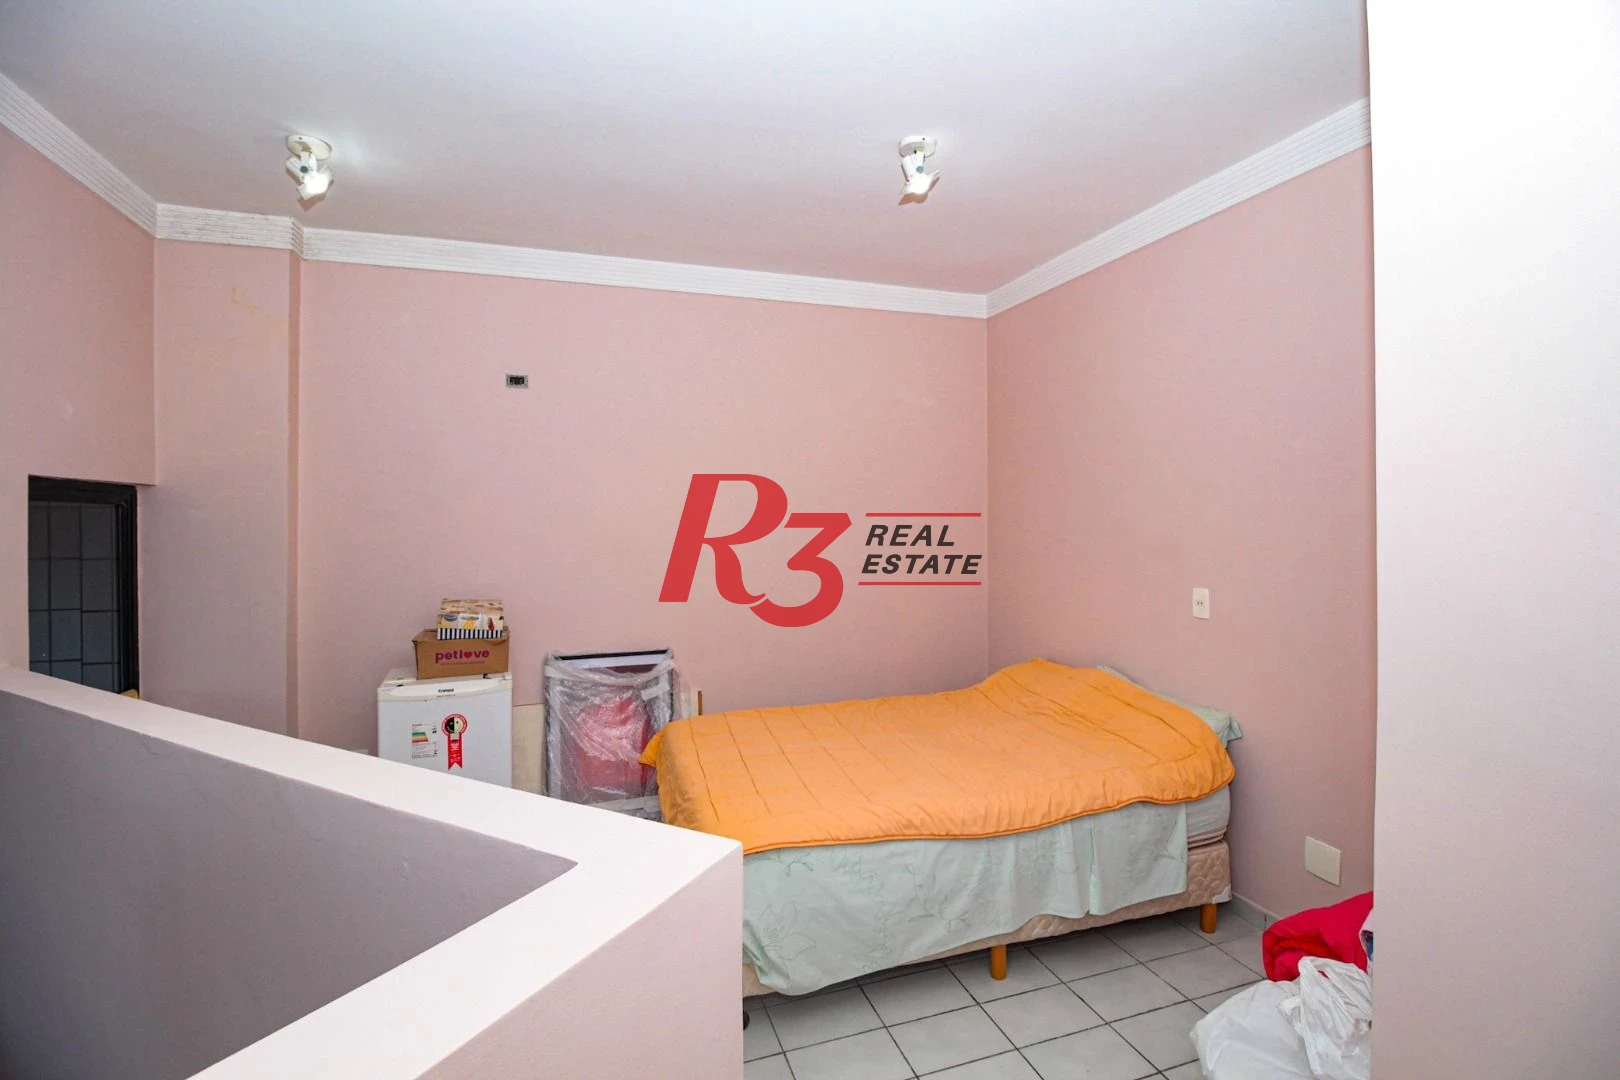 Flat de 2 dormitórios para locação na Ponta da Praia.